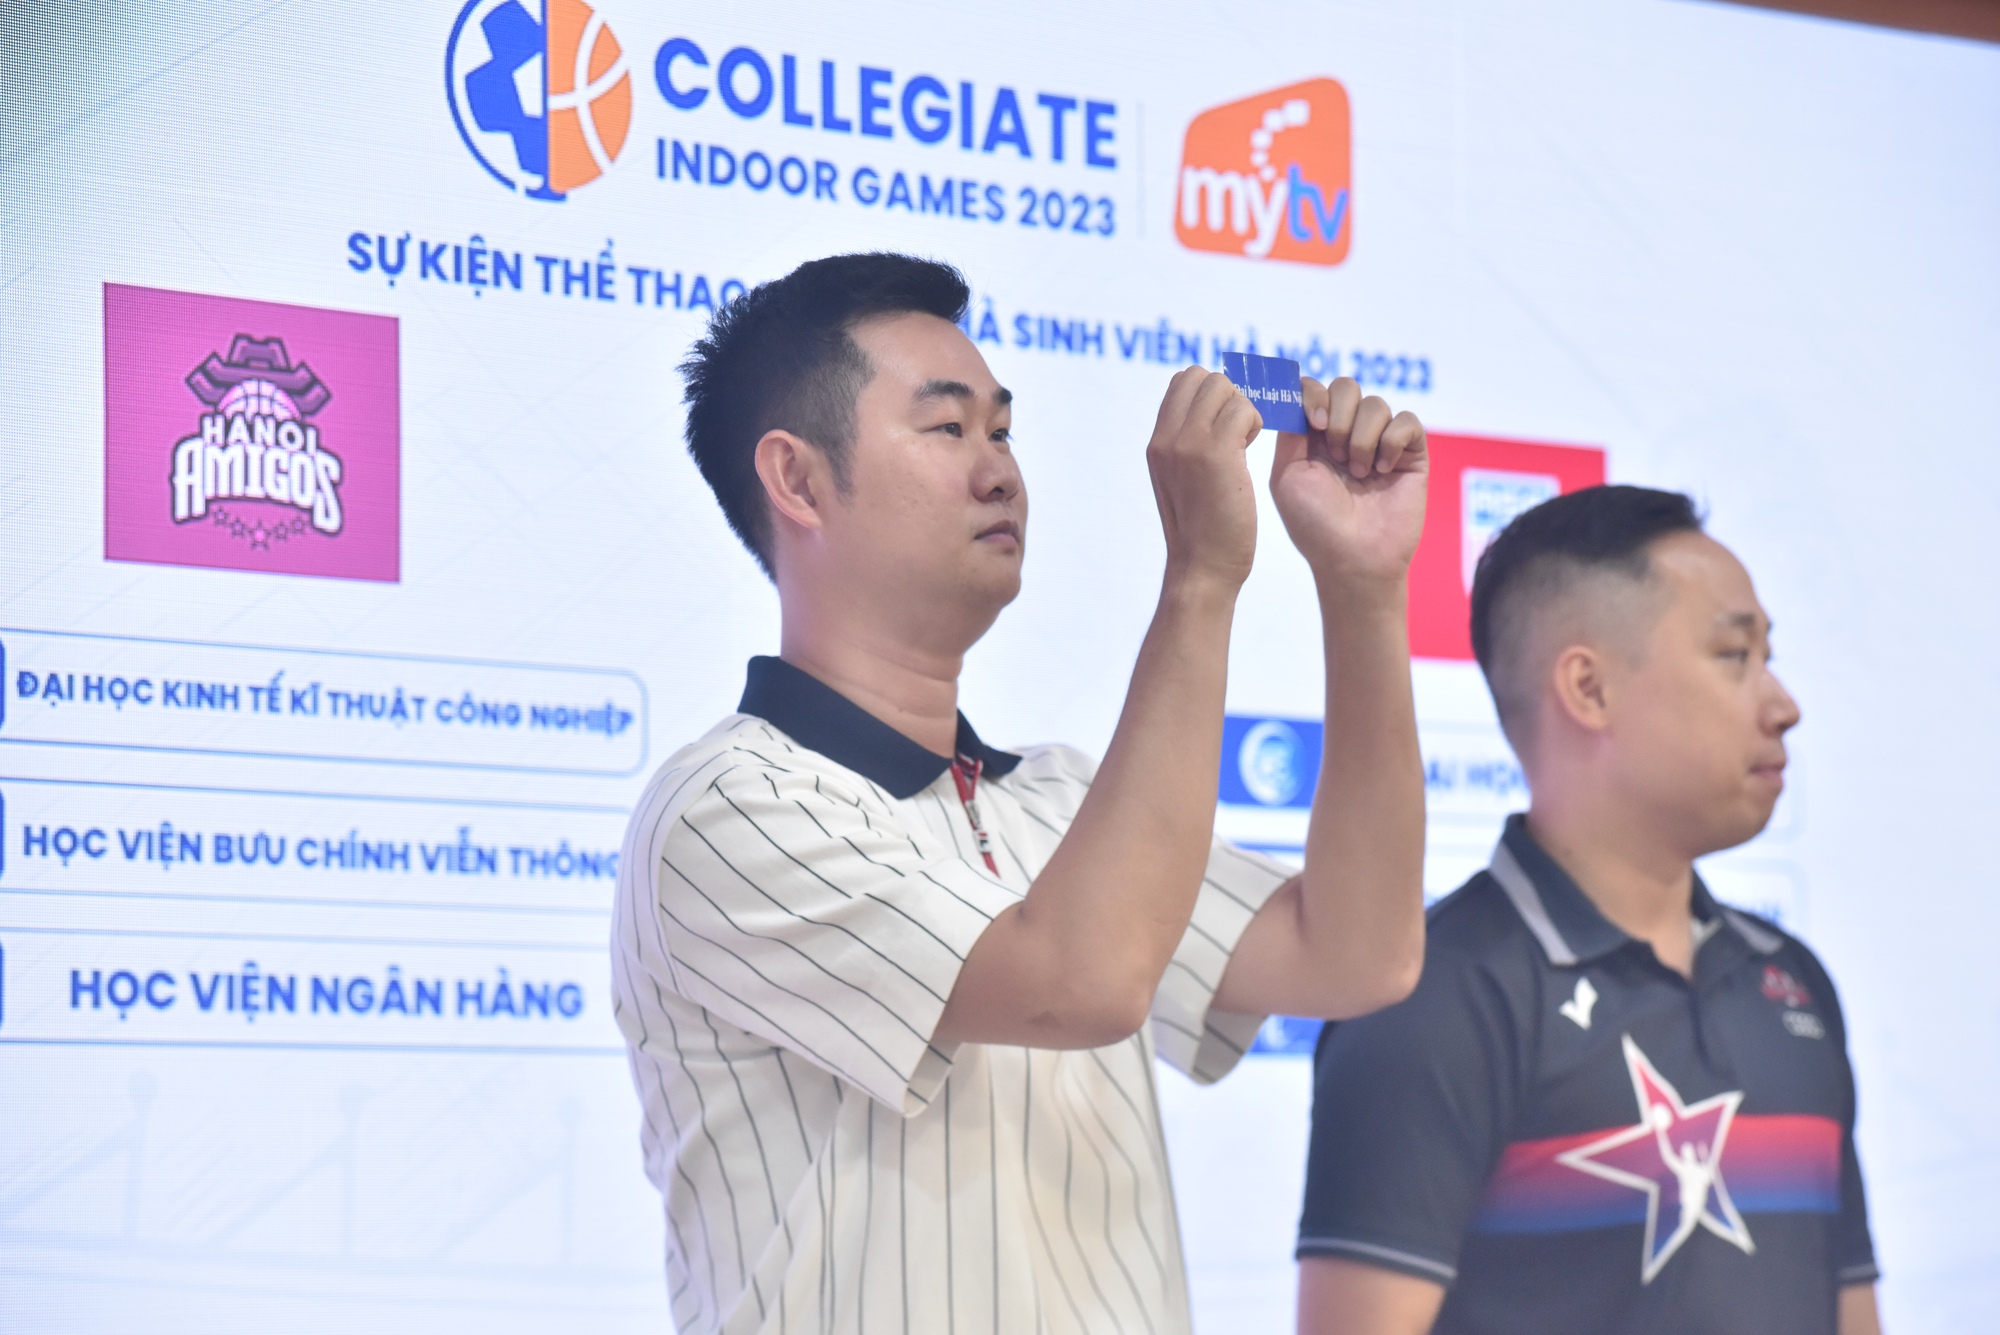 Sôi động ra mắt giải thể thao trong nhà dành cho sinh viên Hà Nội lần thứ nhất - Ảnh 2.